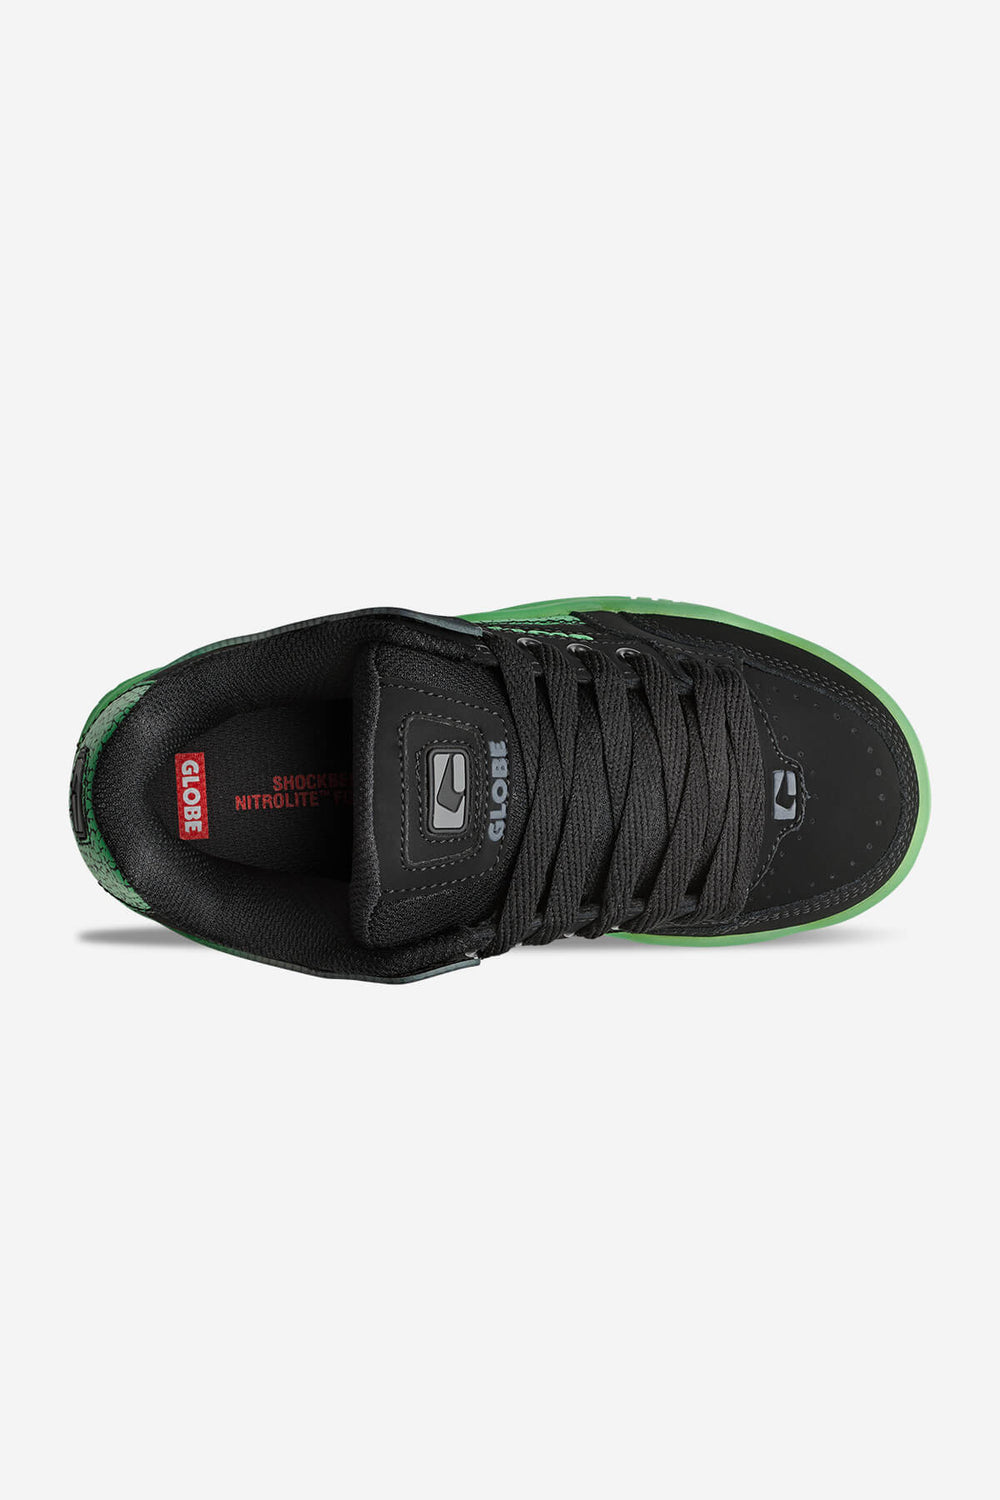 Tilt Bambini nero/verde skateboard scarpe Black/Green Stipple